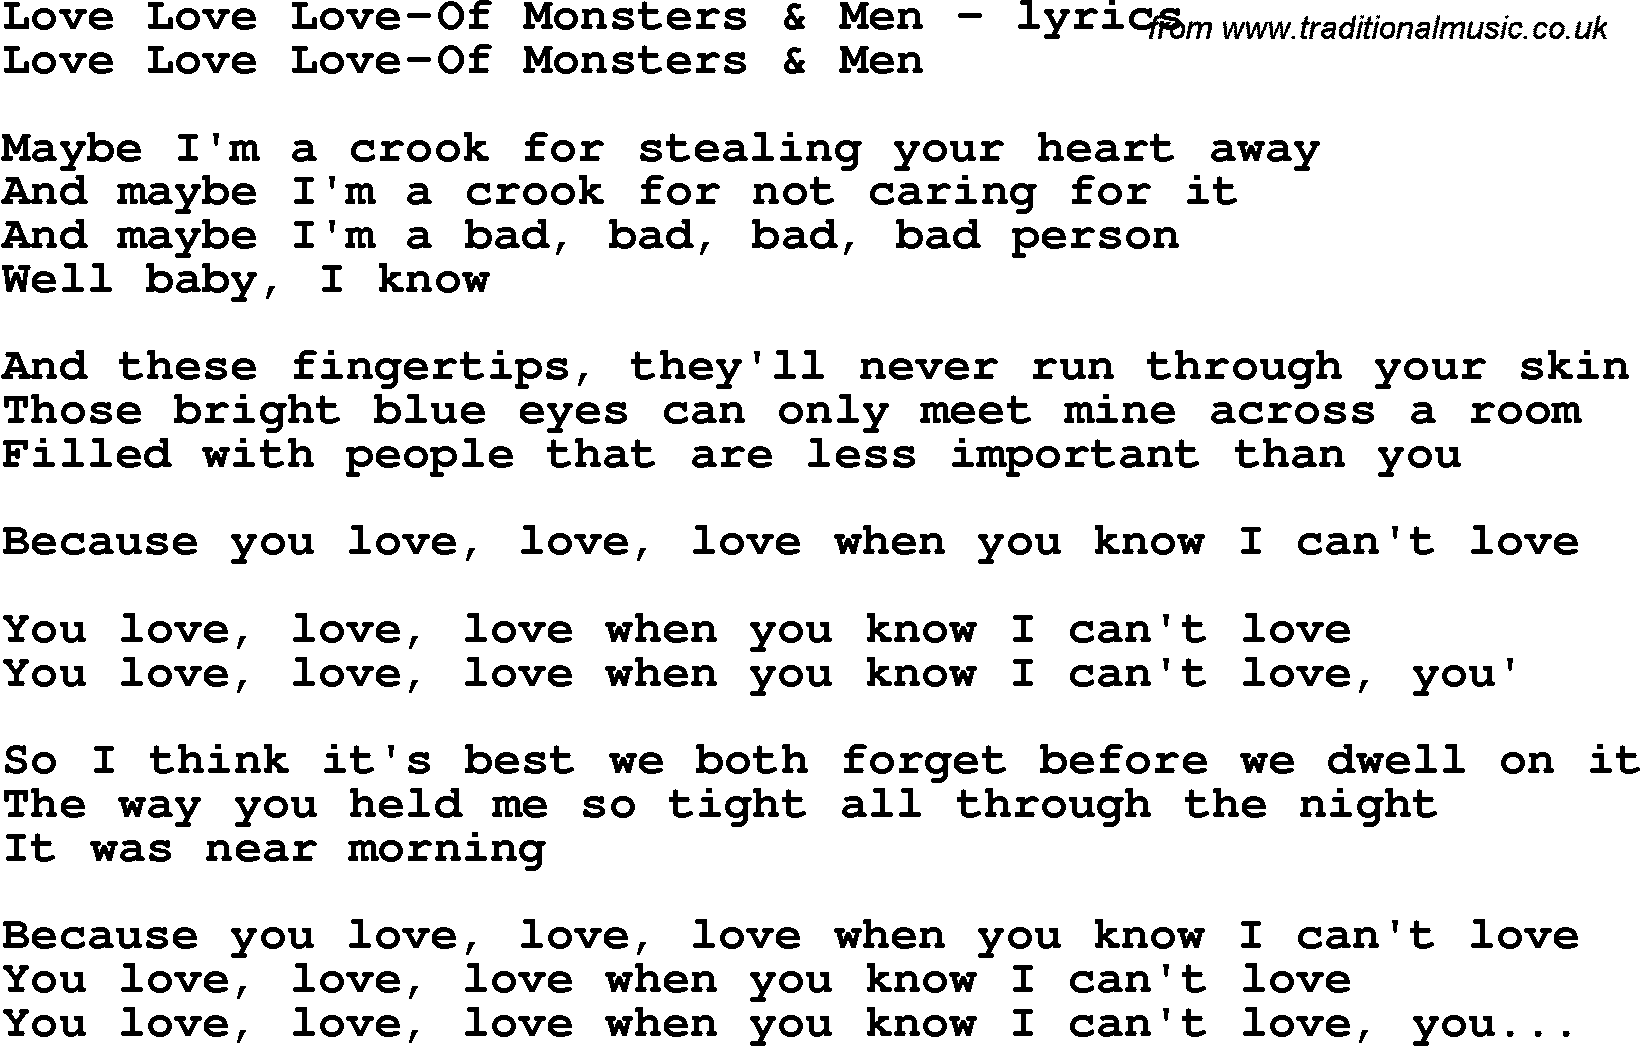 Love Song Lyrics for: Love Love Love-Of Monsters & Men